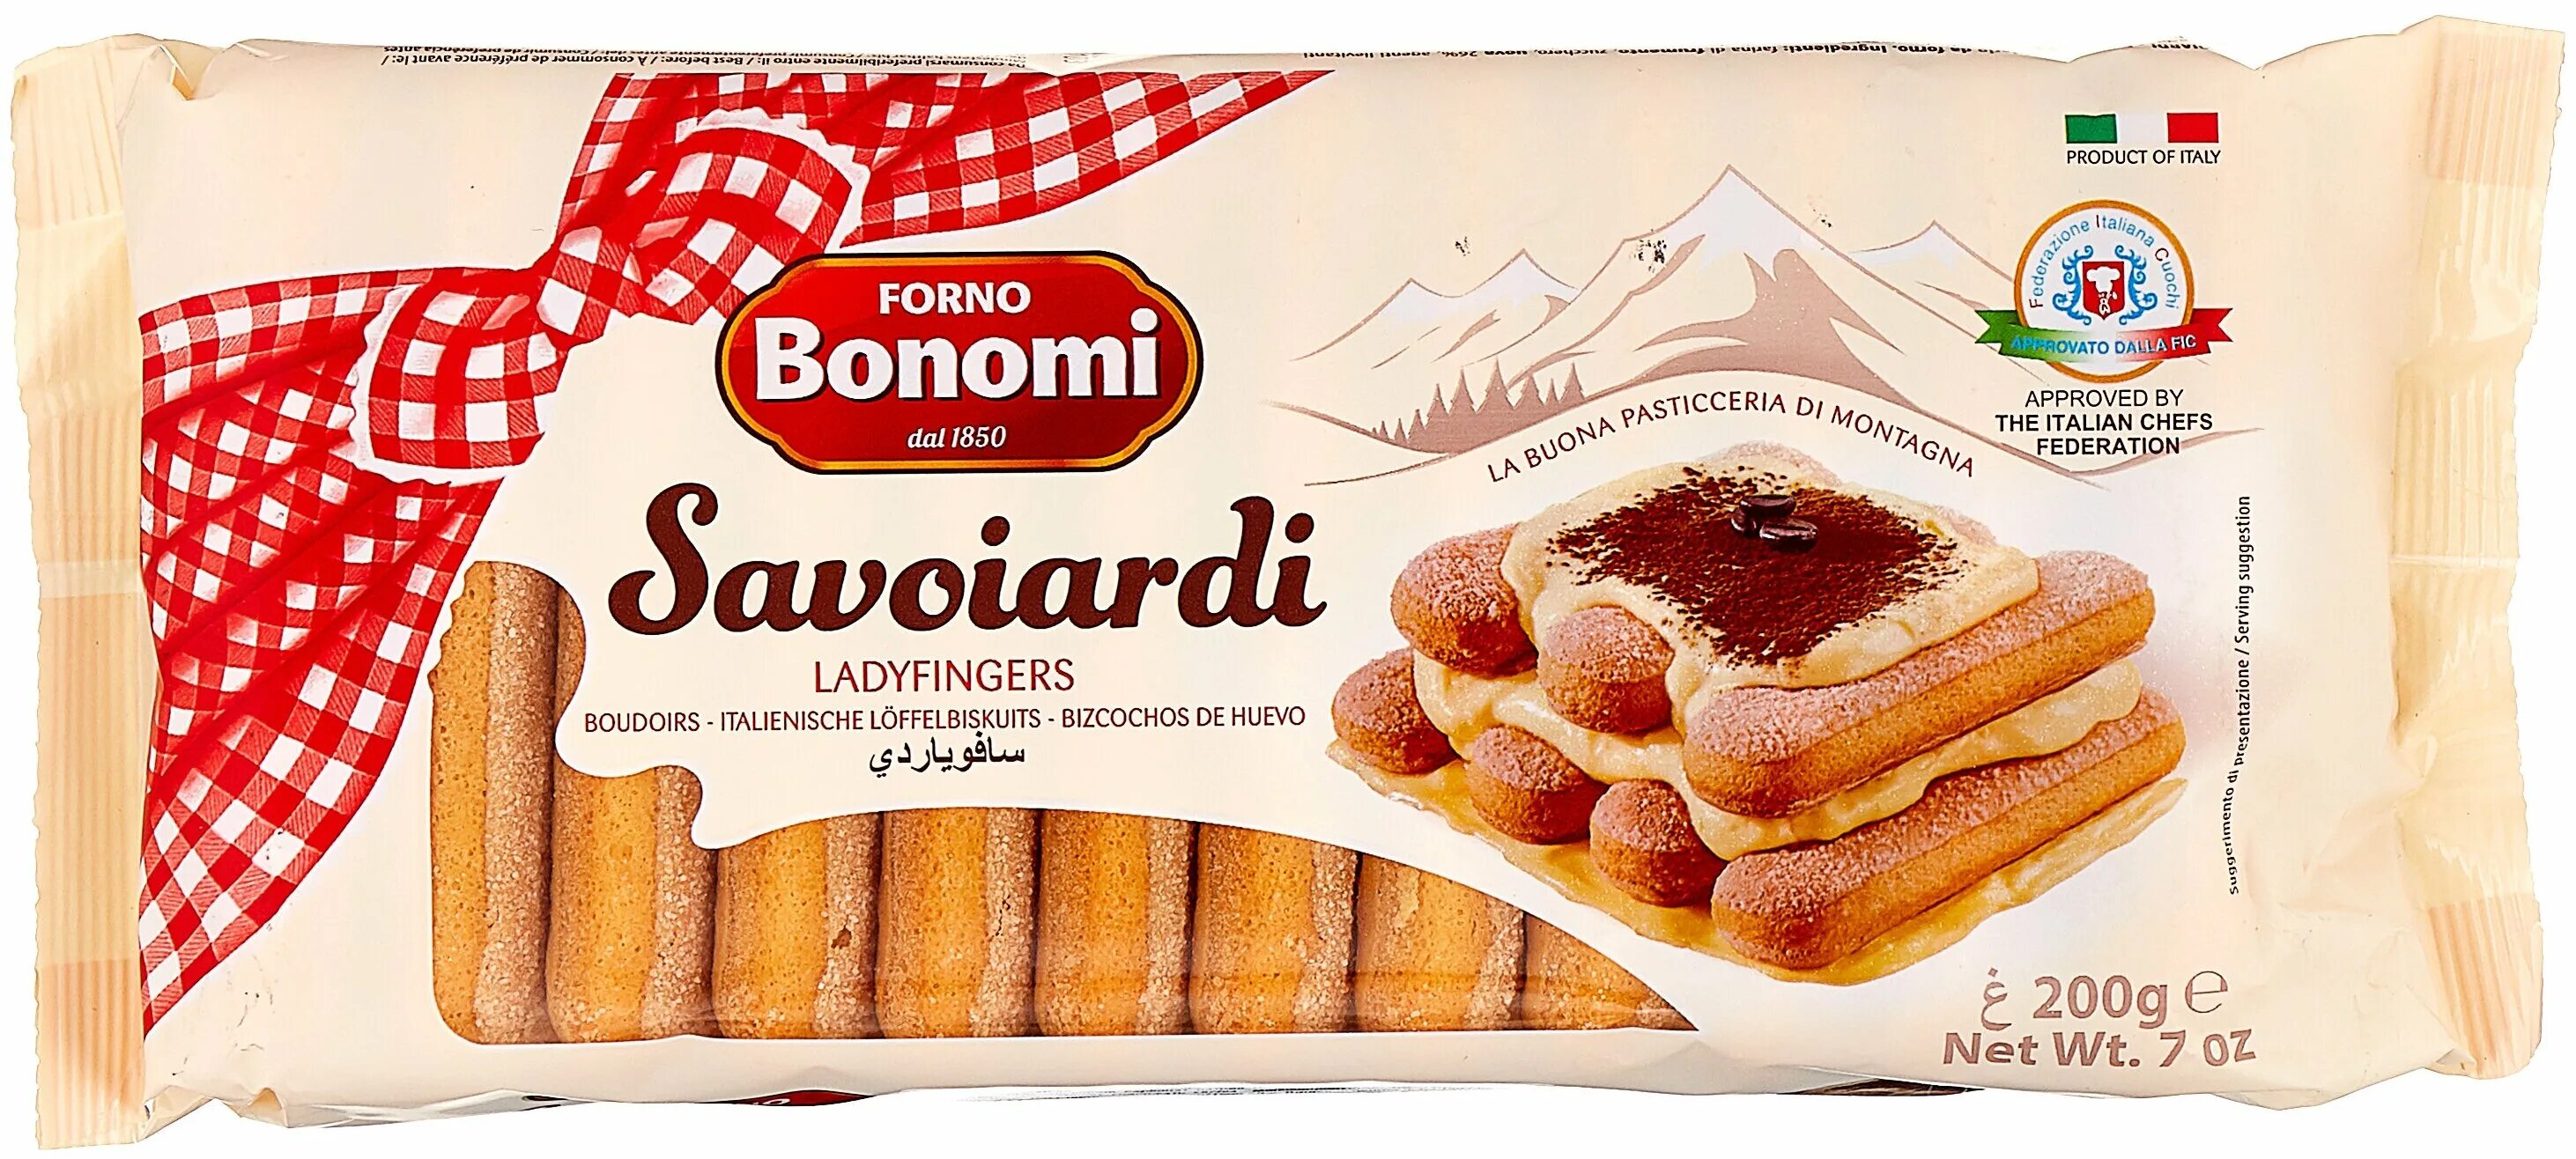 Печенье для тирамису купить. Forno Bonomi савоярди ladyfingers сахарное для тирамису 400 г. Печенье cавоярди "forno Bonomi" (400 гр). Печенье савоярди 400 г. Bonomi. Печенье савоярди "forno Bonomi" 400 гр*15 (Италия).